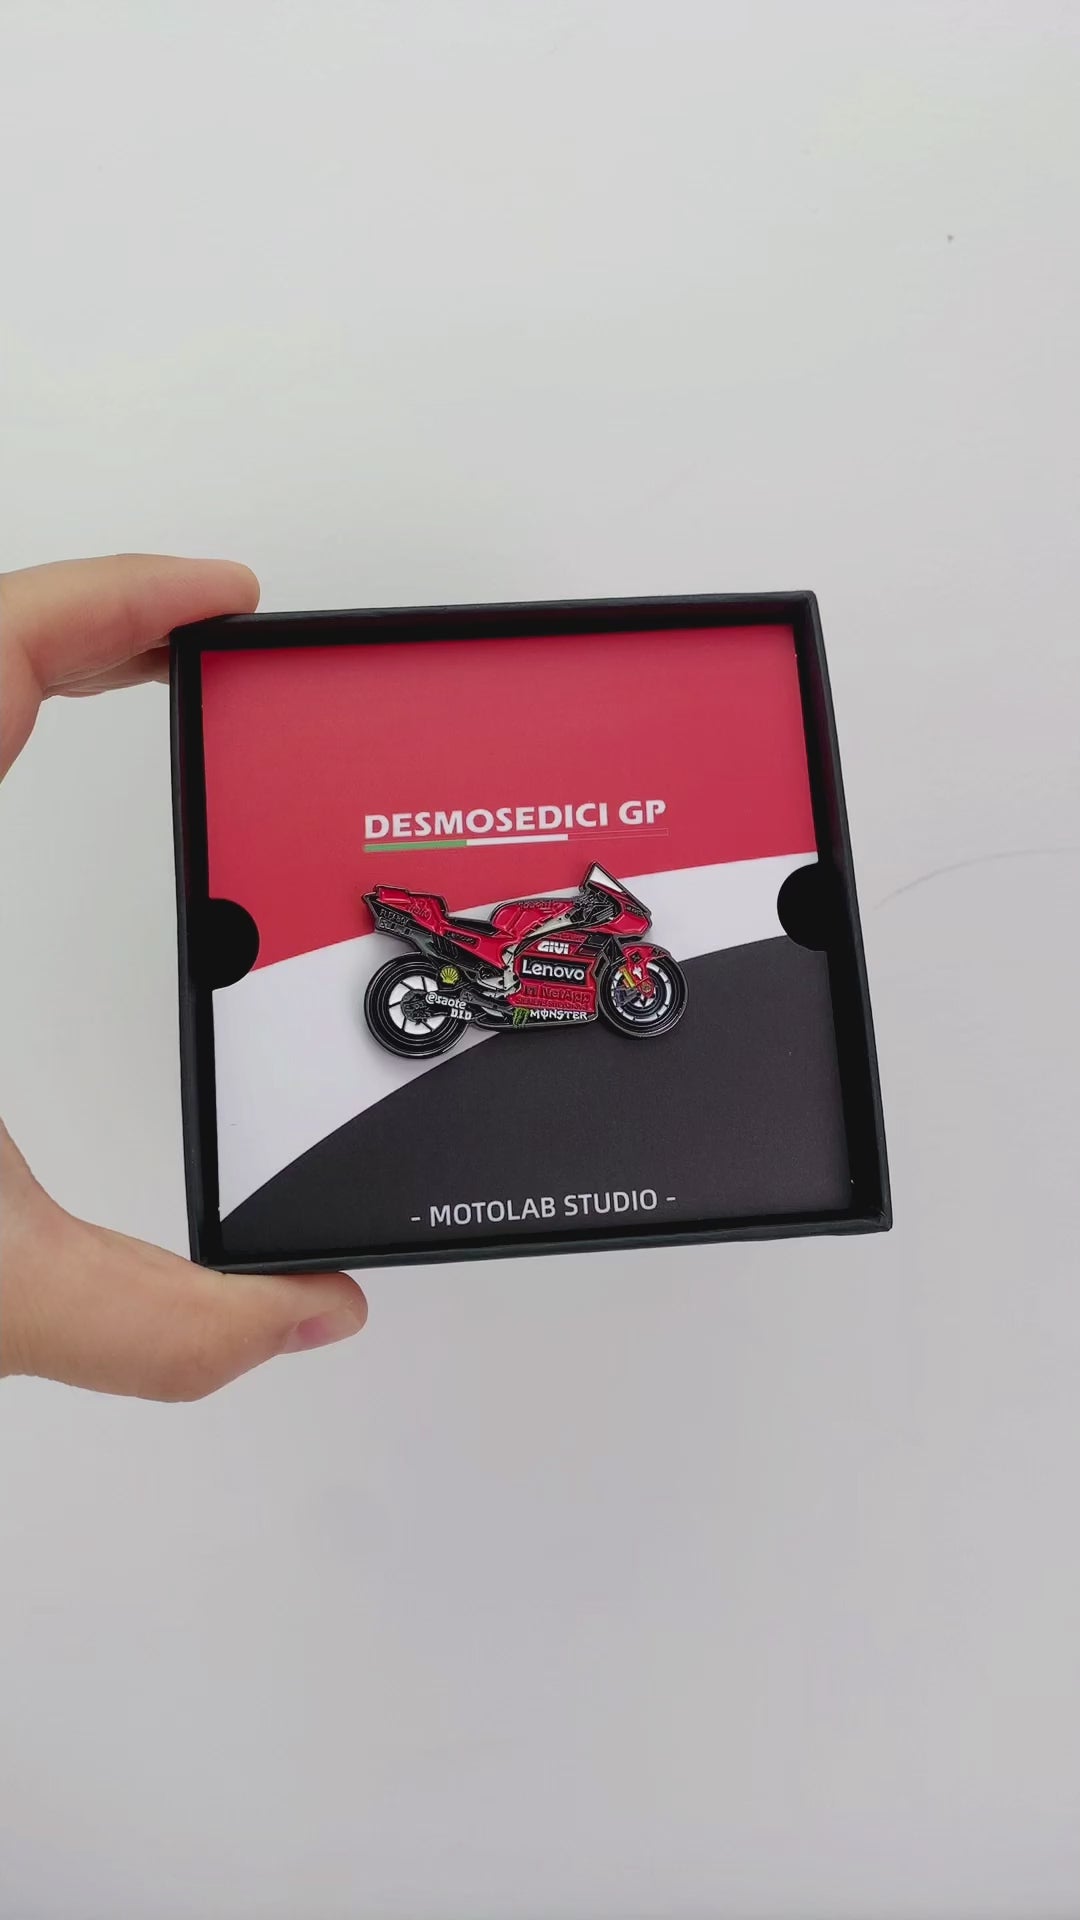 Bagnaia-63-Ducati-GP23-Motorbike-Motorcycle-MotoGP-Racing-Bike-Pin-Badge-Video